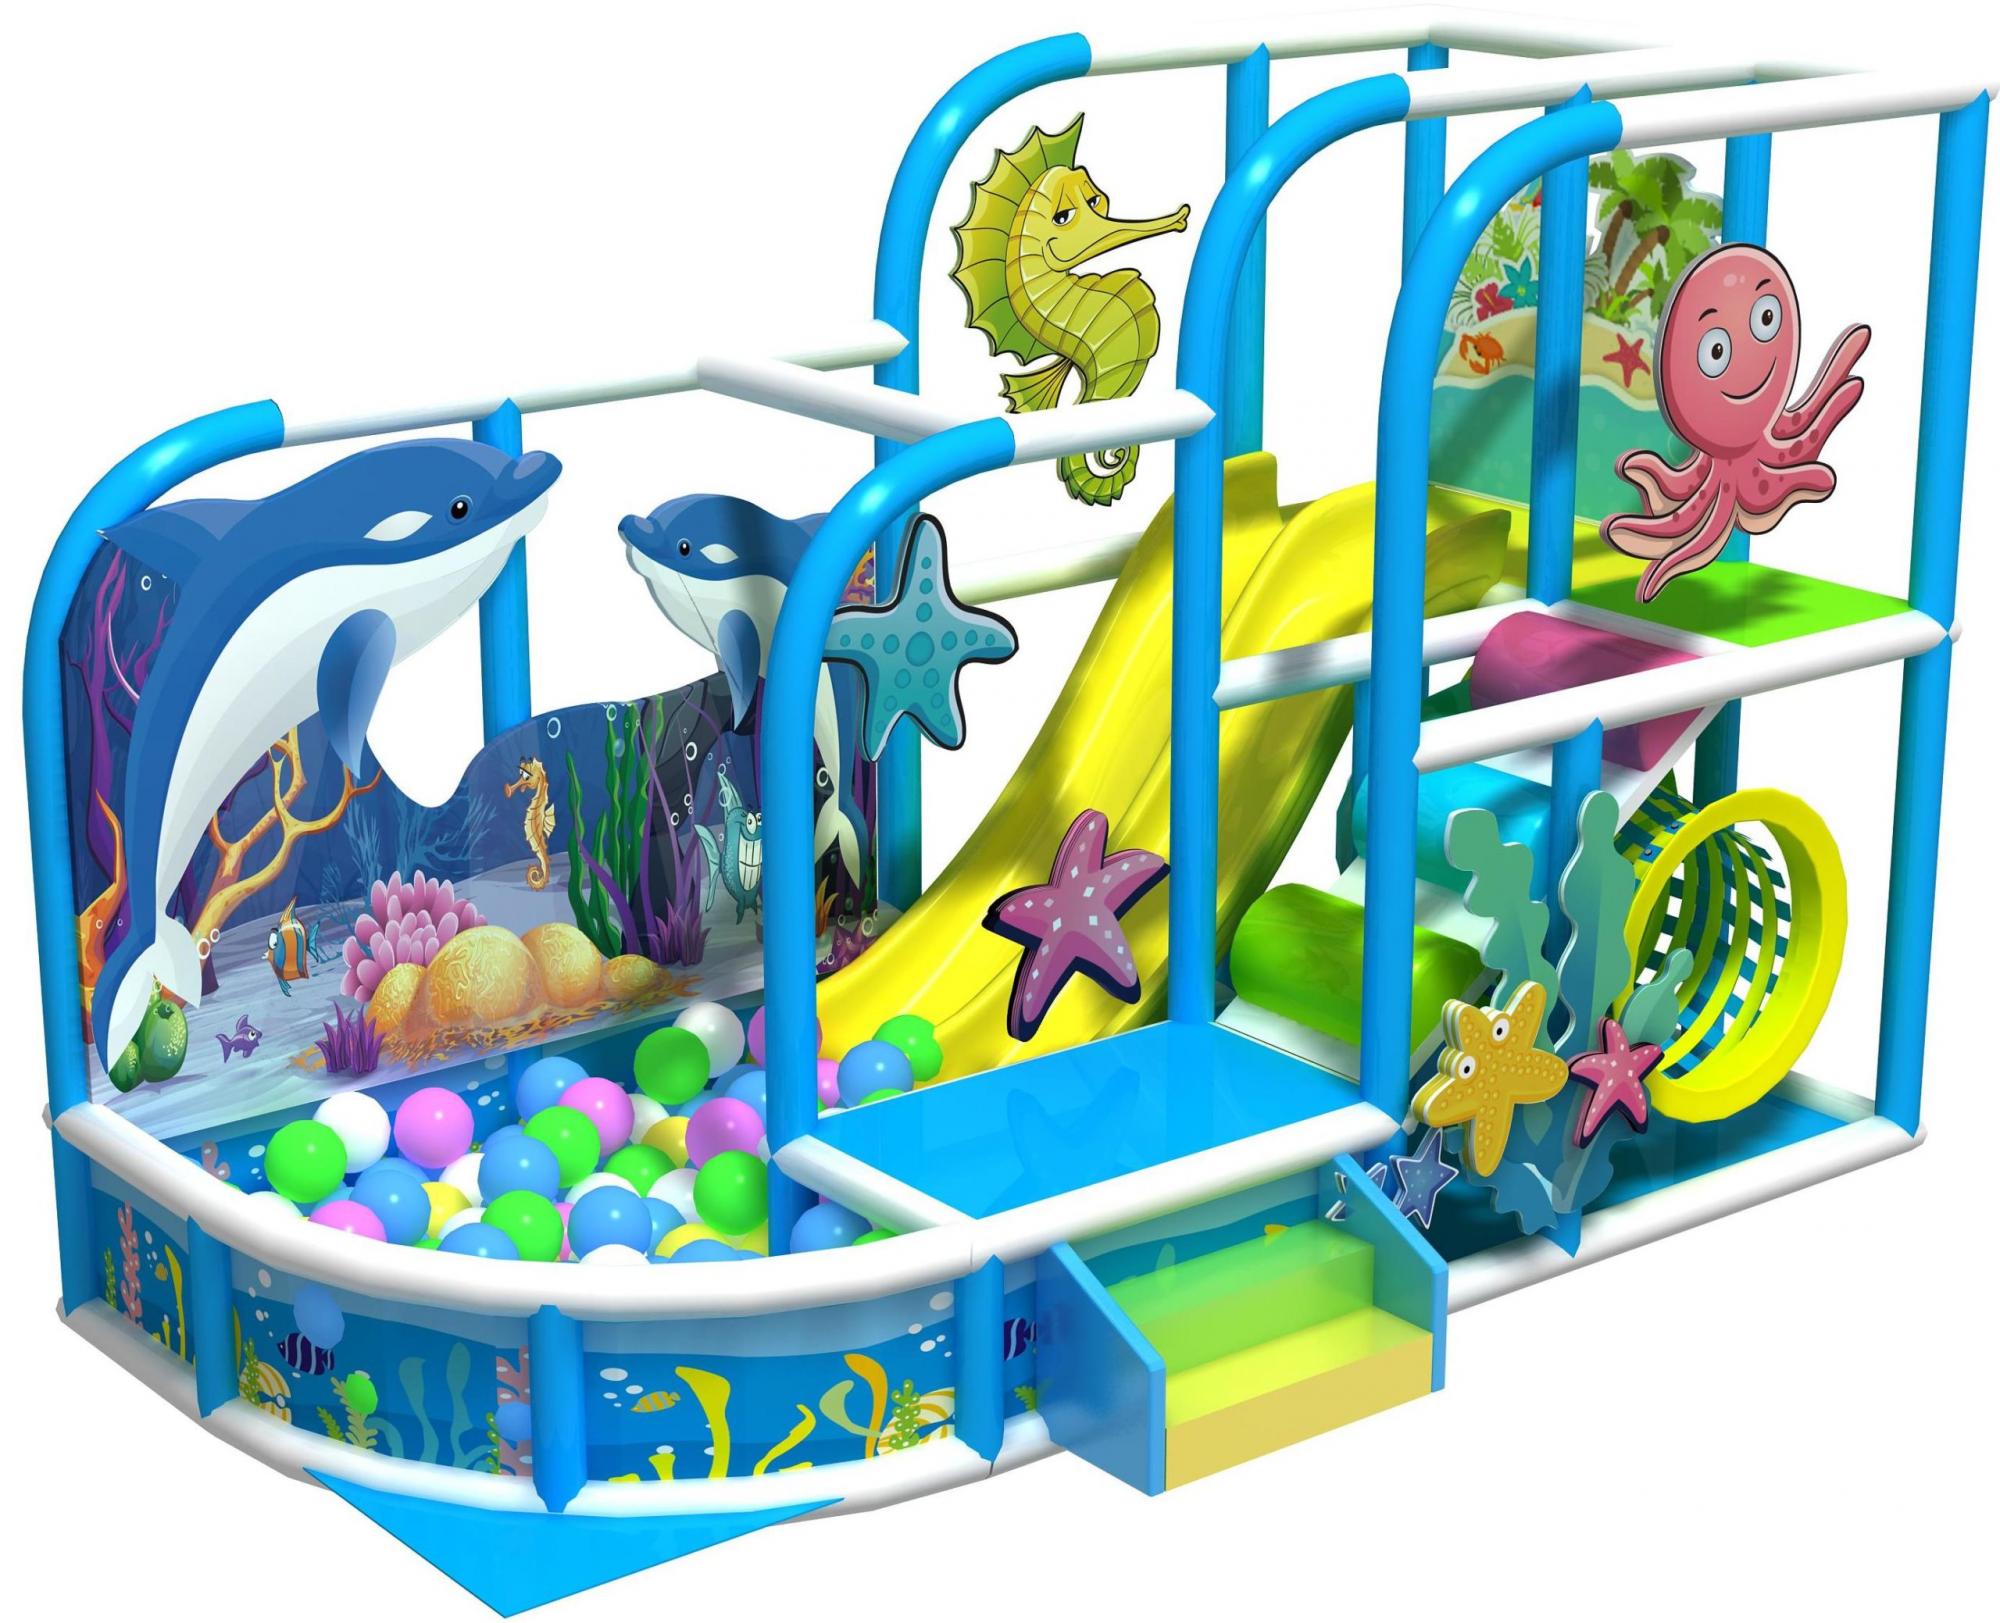 Развлечения оборудование. Развлекательное оборудование для детей. Игровой Лабиринт для детей бассейн. Игровой комплекс для детей с сухим бассейном. Лабиринт рыбка.